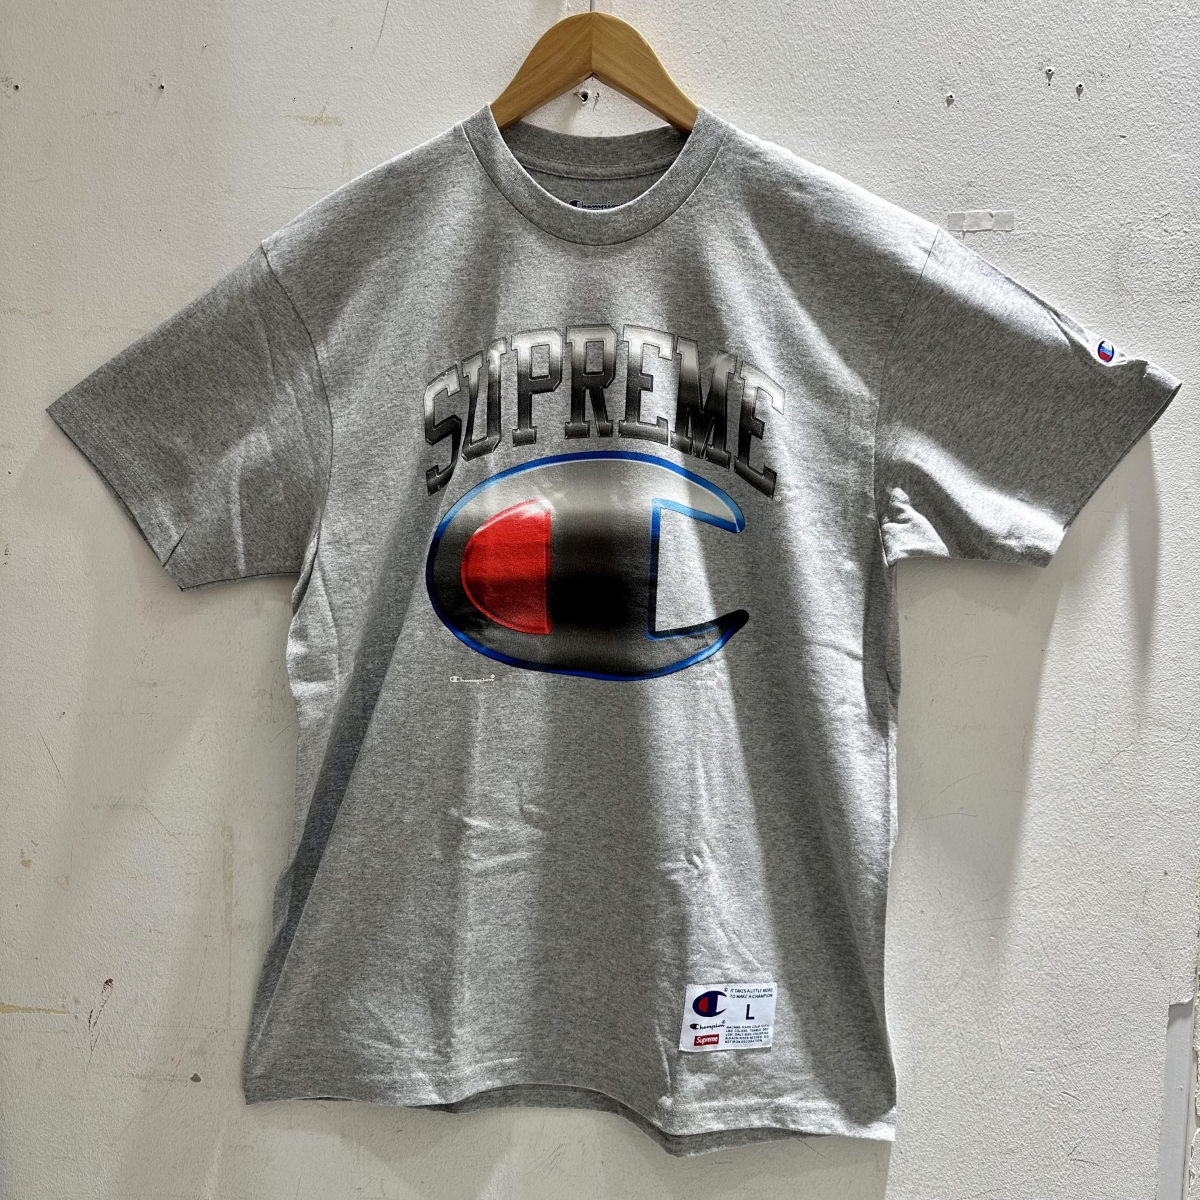 シュプリームの×チャンピオン グレー 2019年春夏物 Tシャツの買取実績です。